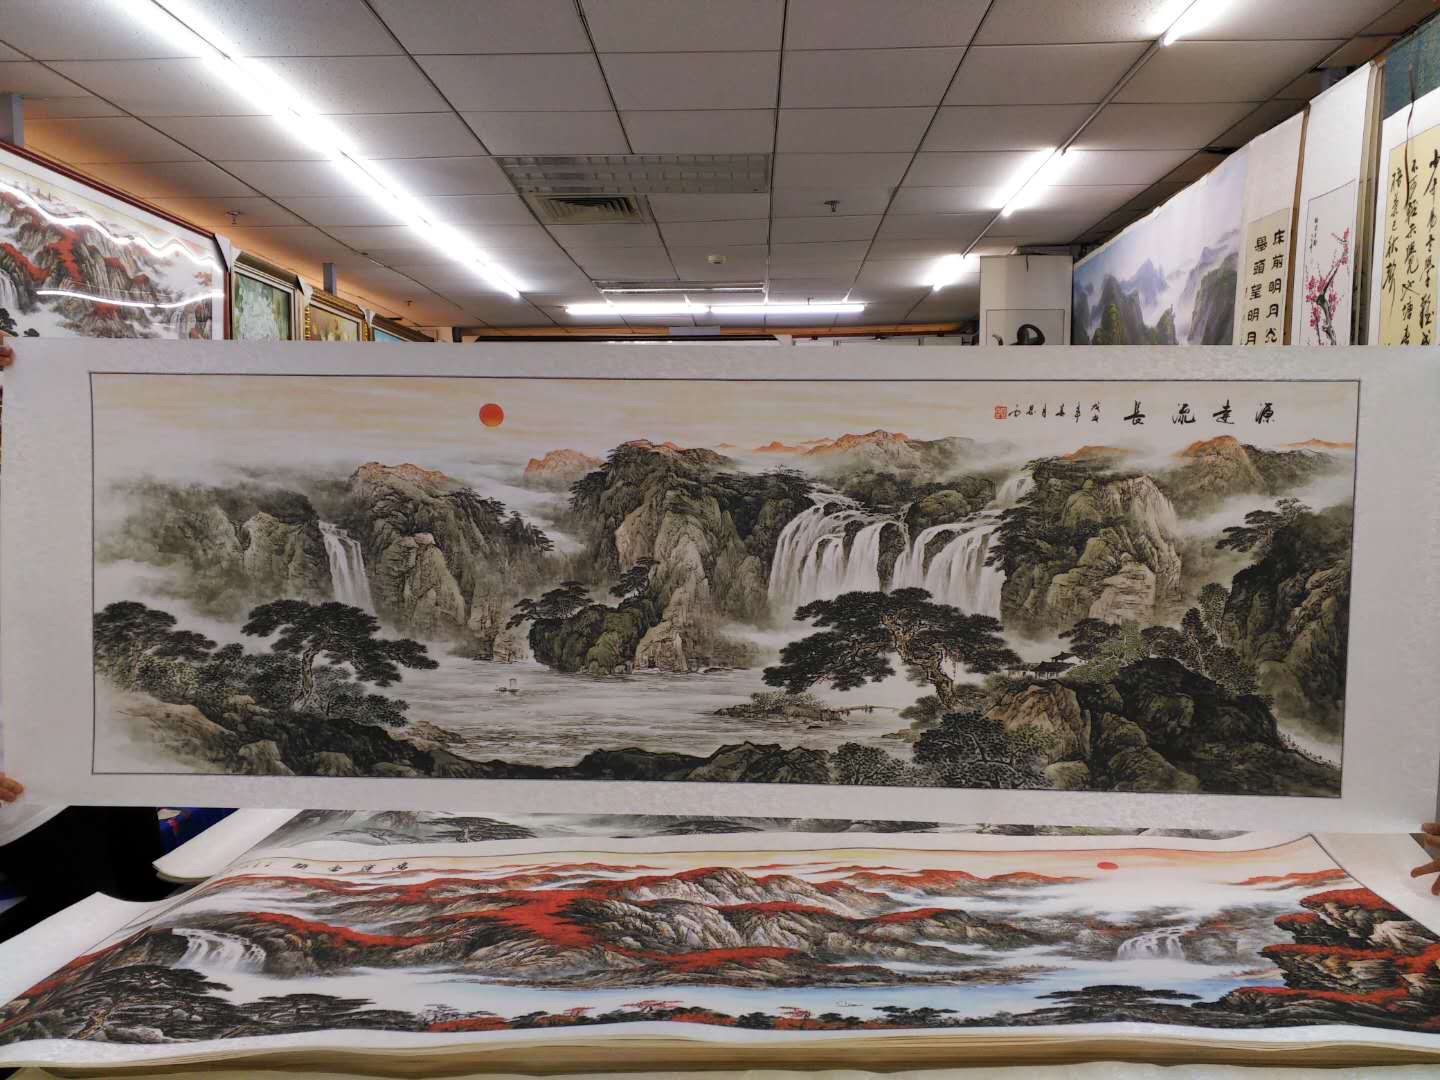 80x240水印印刷黑白水墨源远流长山水国画中国画传统装饰画产品图